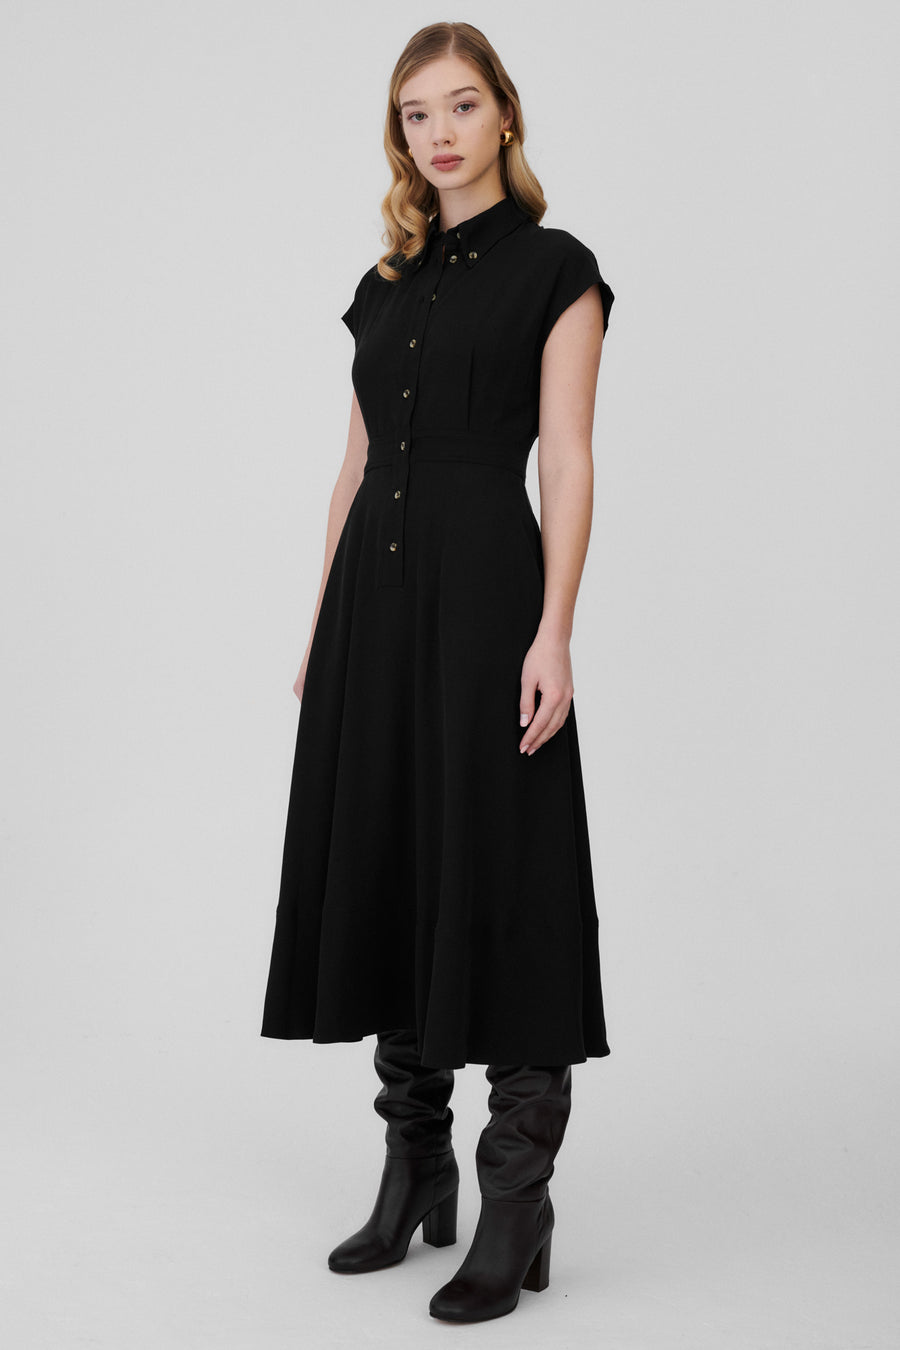 Sukienka z Tencelu™ / 03 / 11 / onyx black ** ?Modelka ma 177cm wzrostu i nosi rozmiar S?